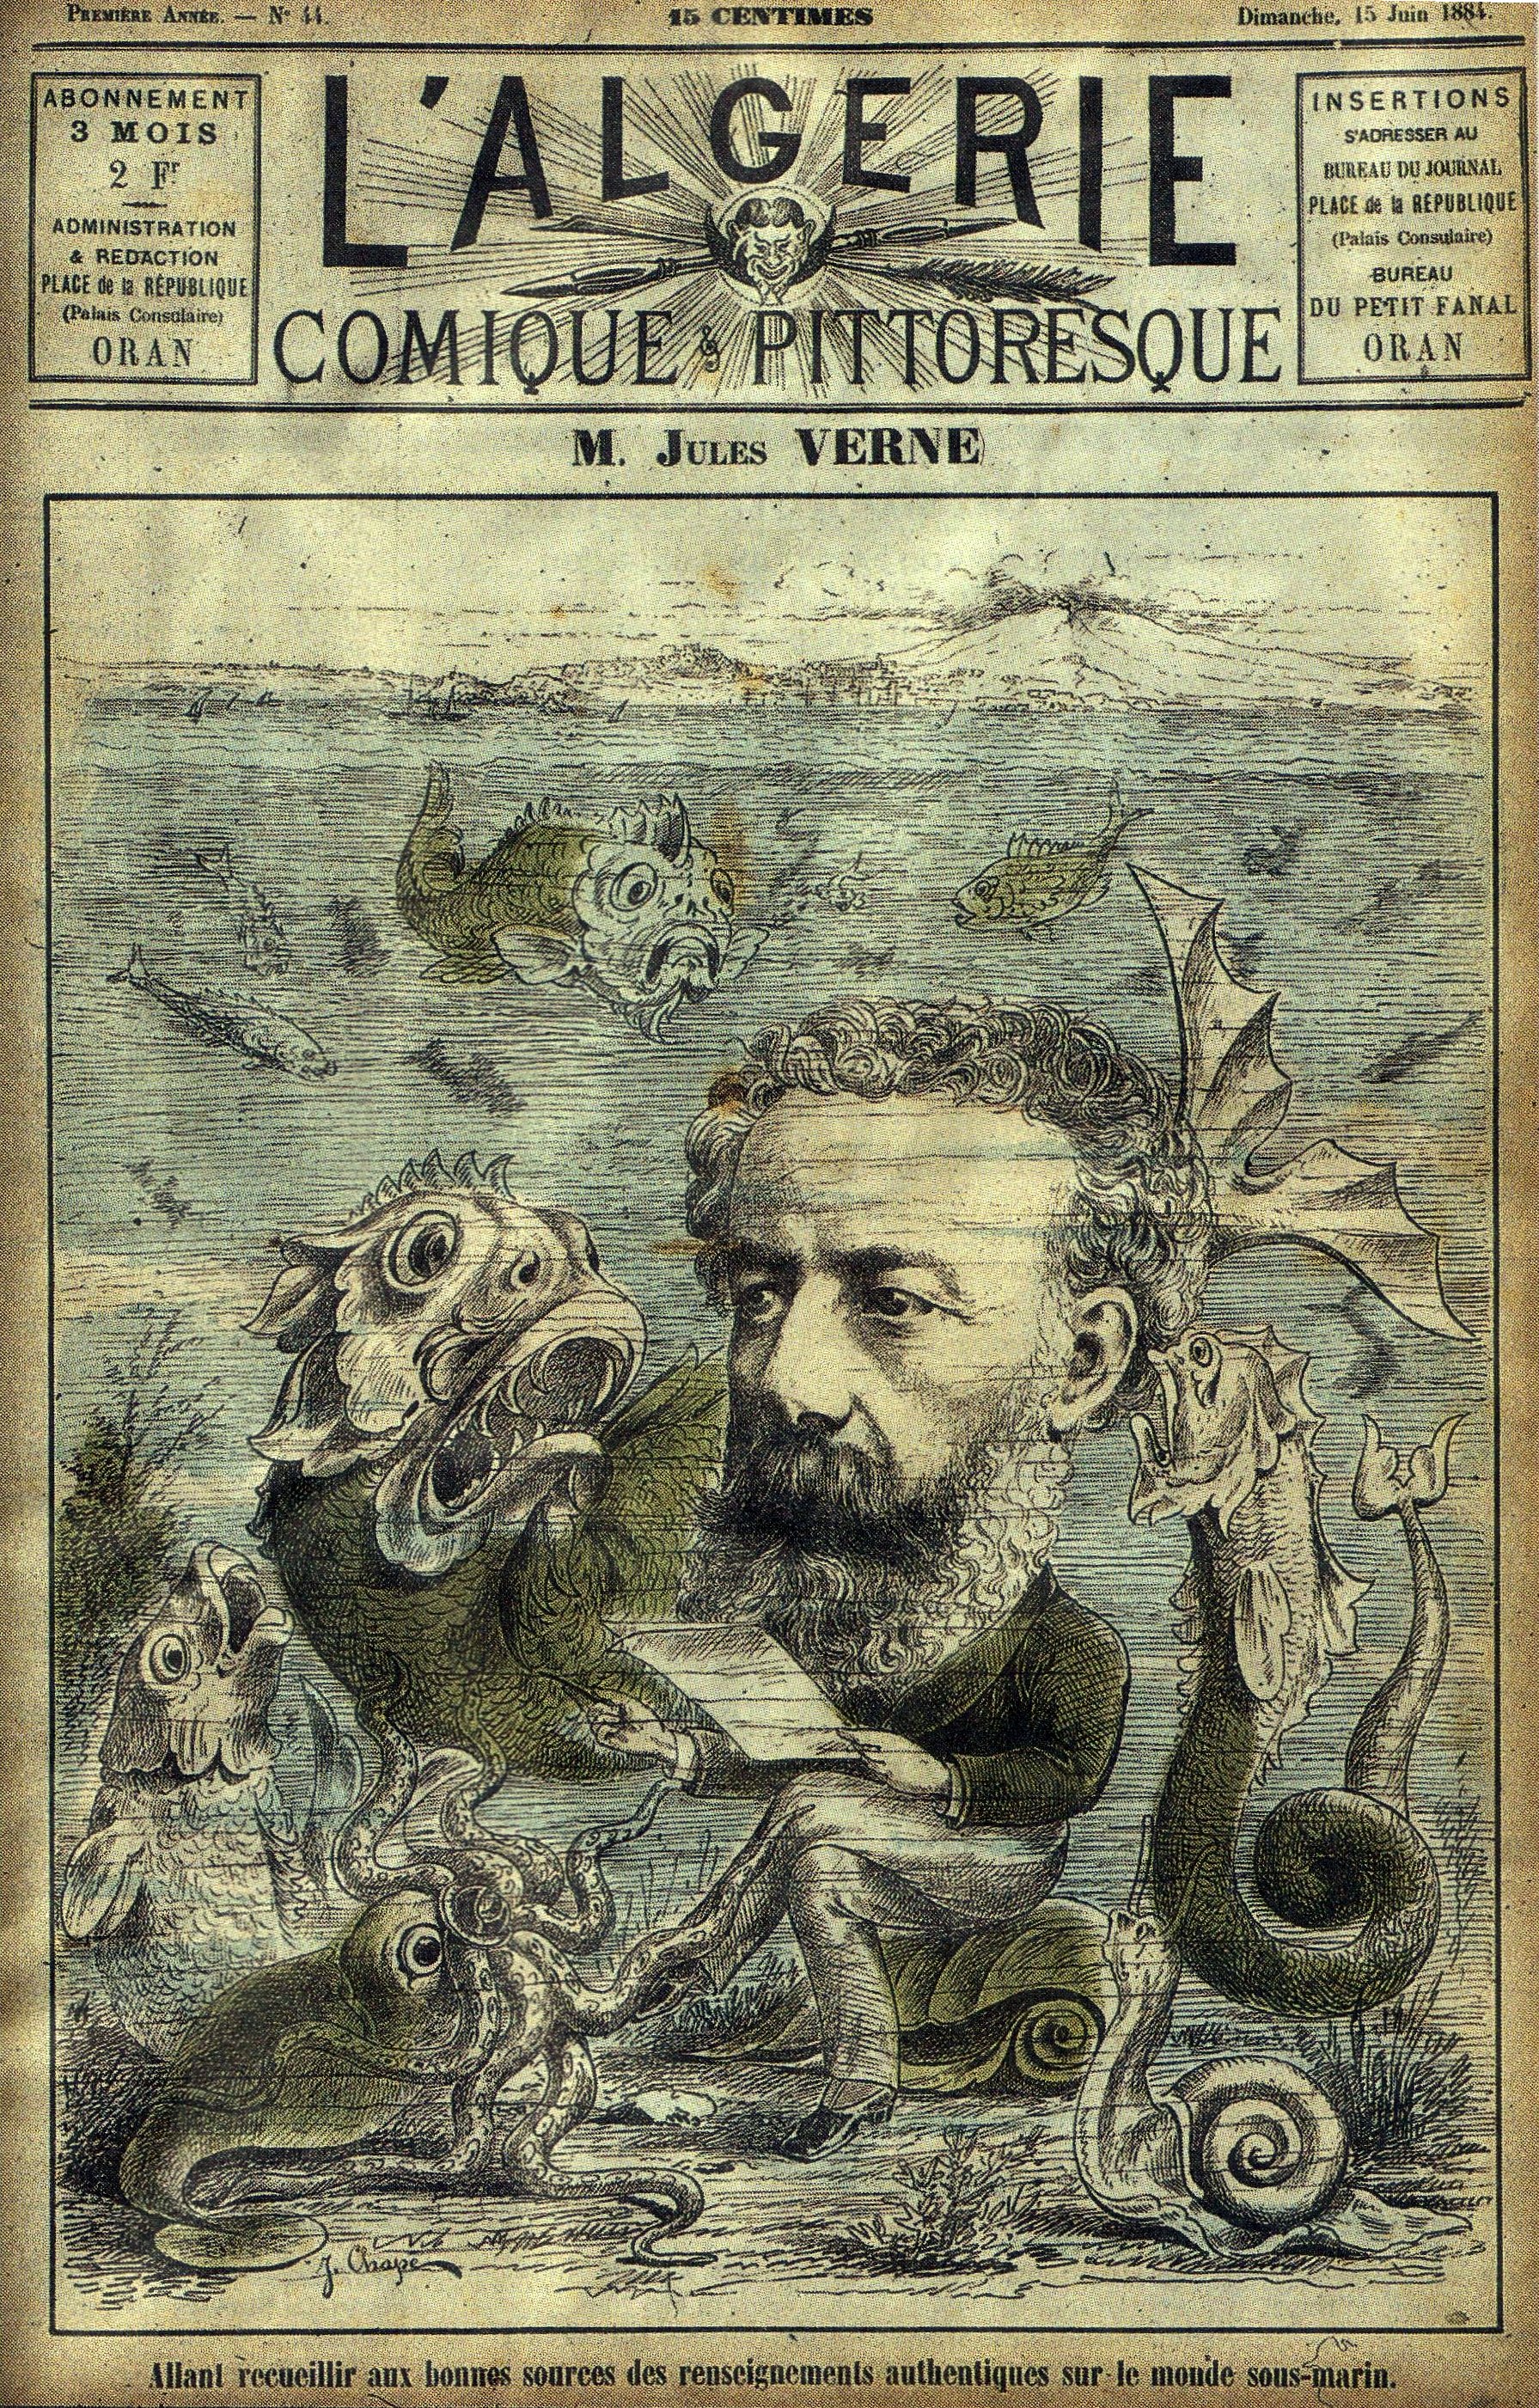 Jules Verne Algerie